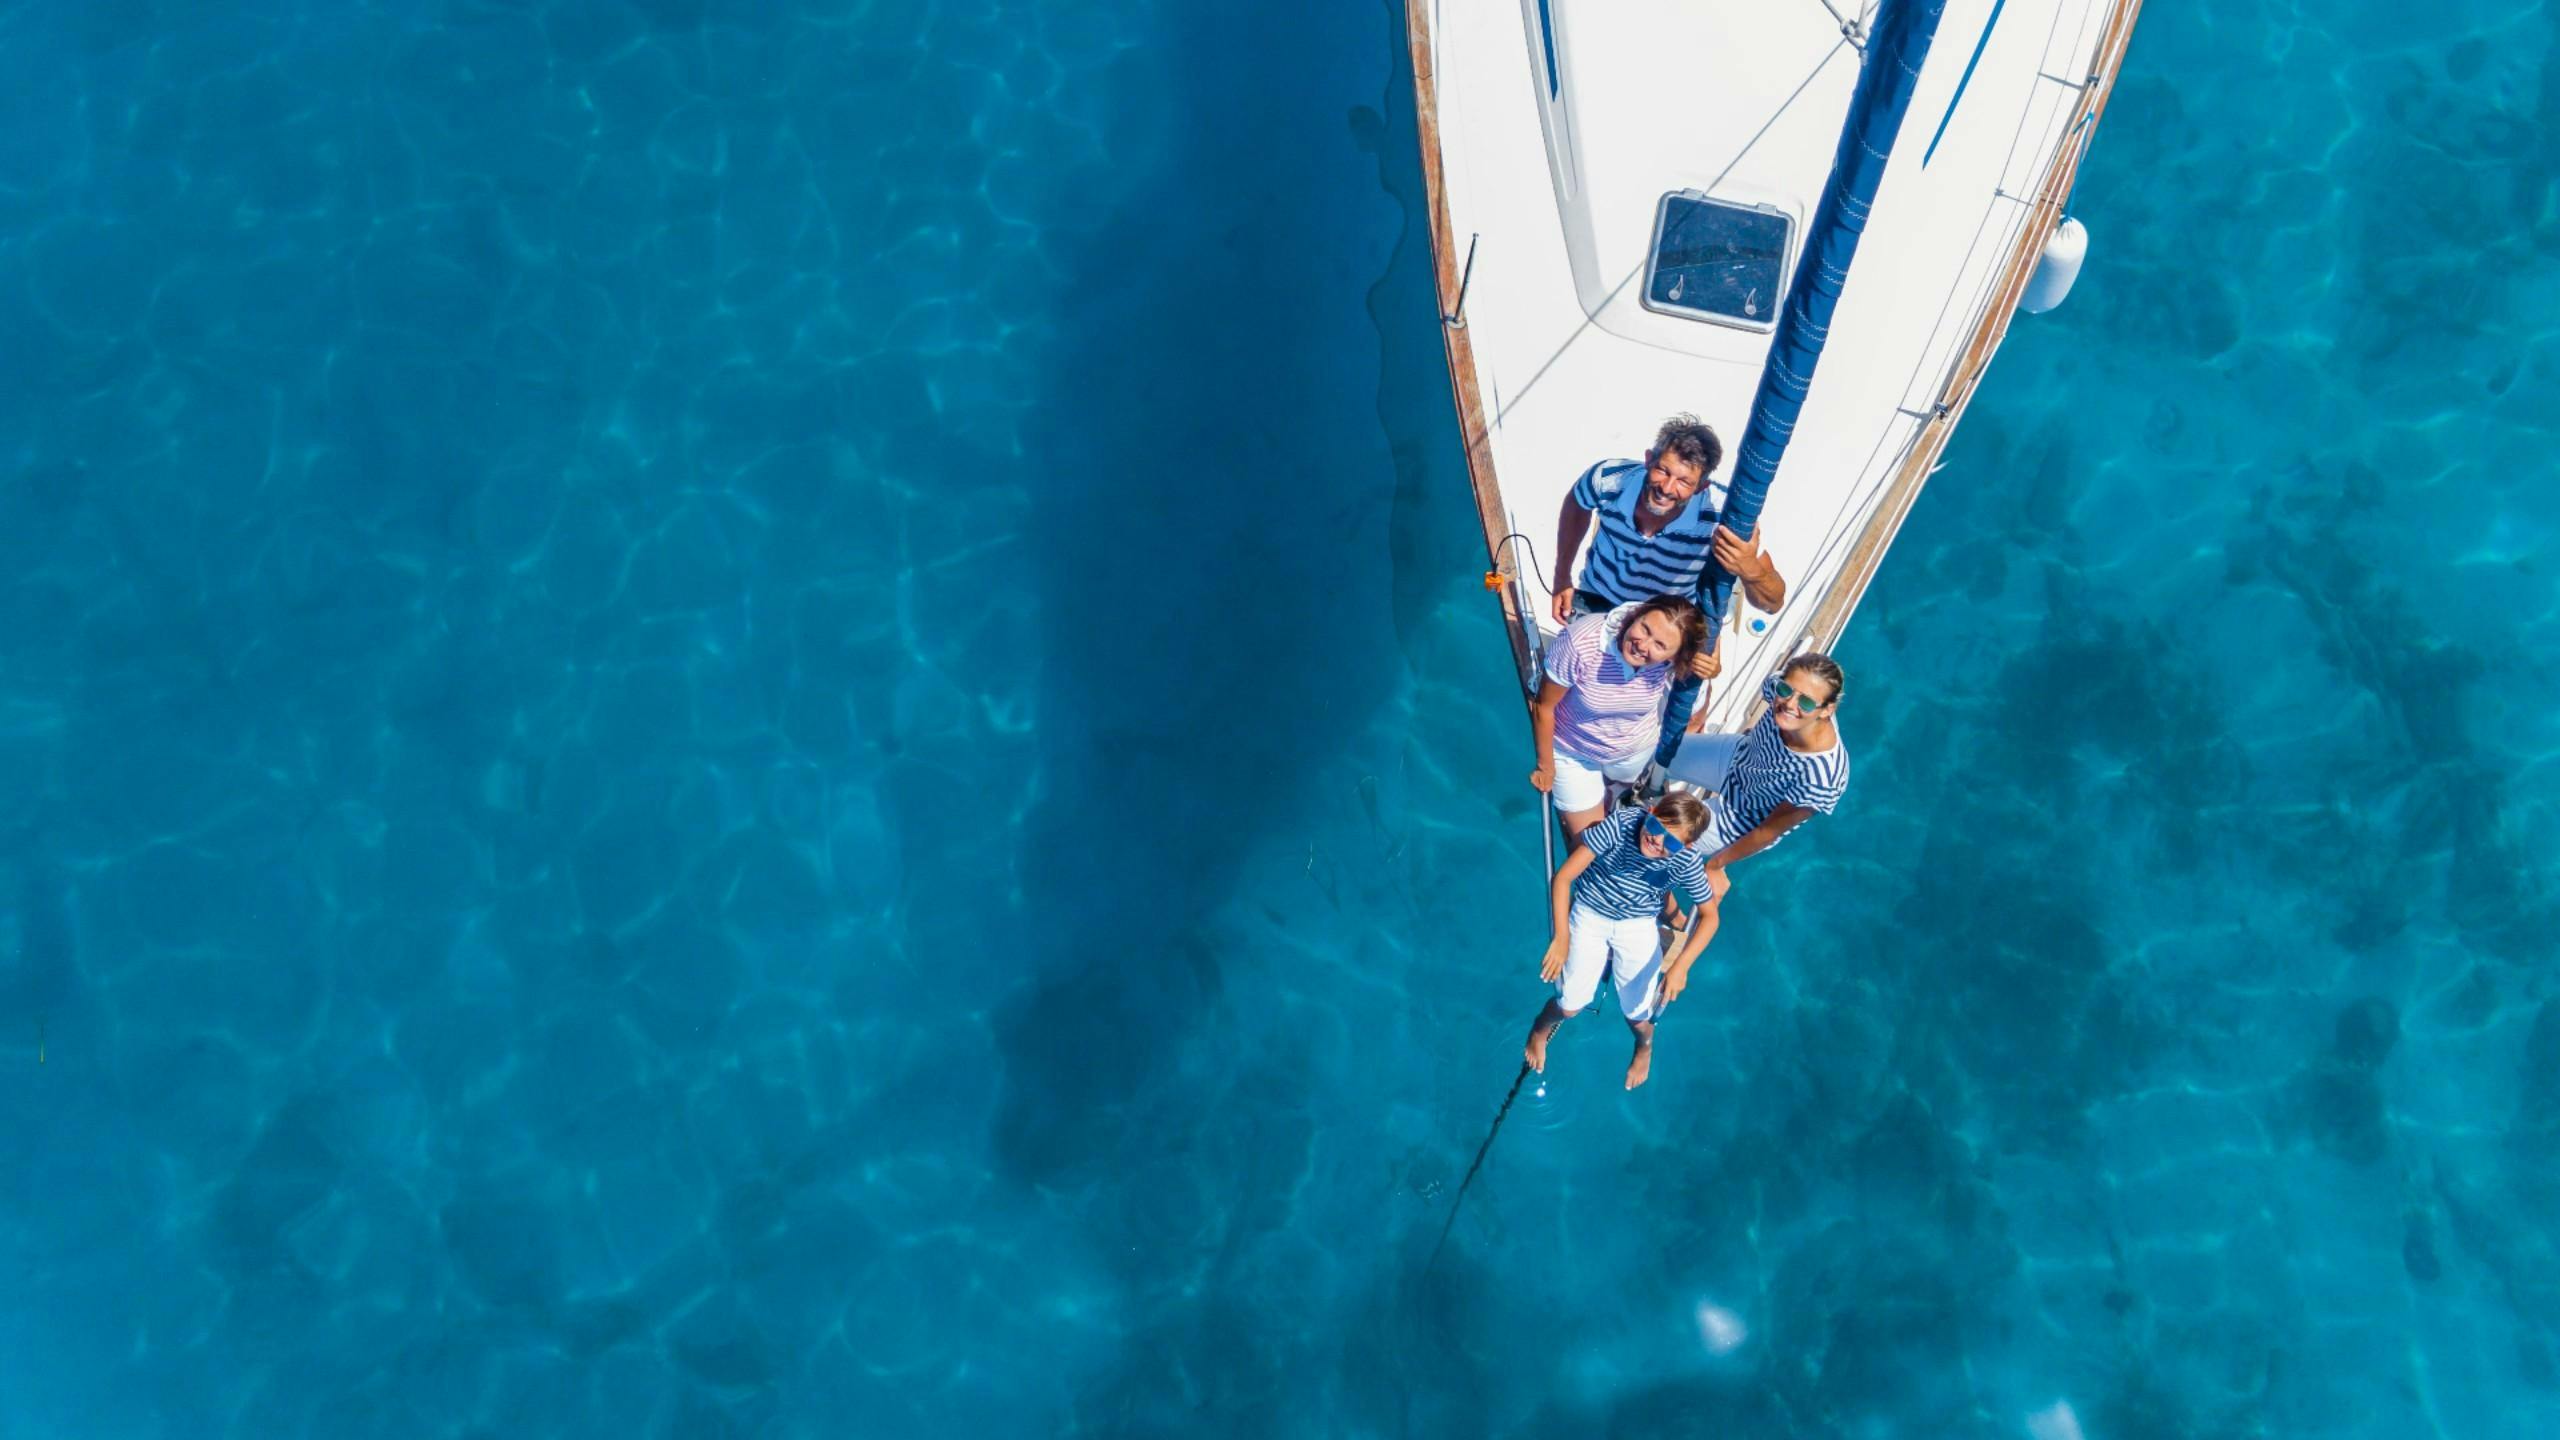 Una famiglia sta navigando in acque azzurre e limpide su un’imbarcazione noleggiata da una società di noleggio barche.